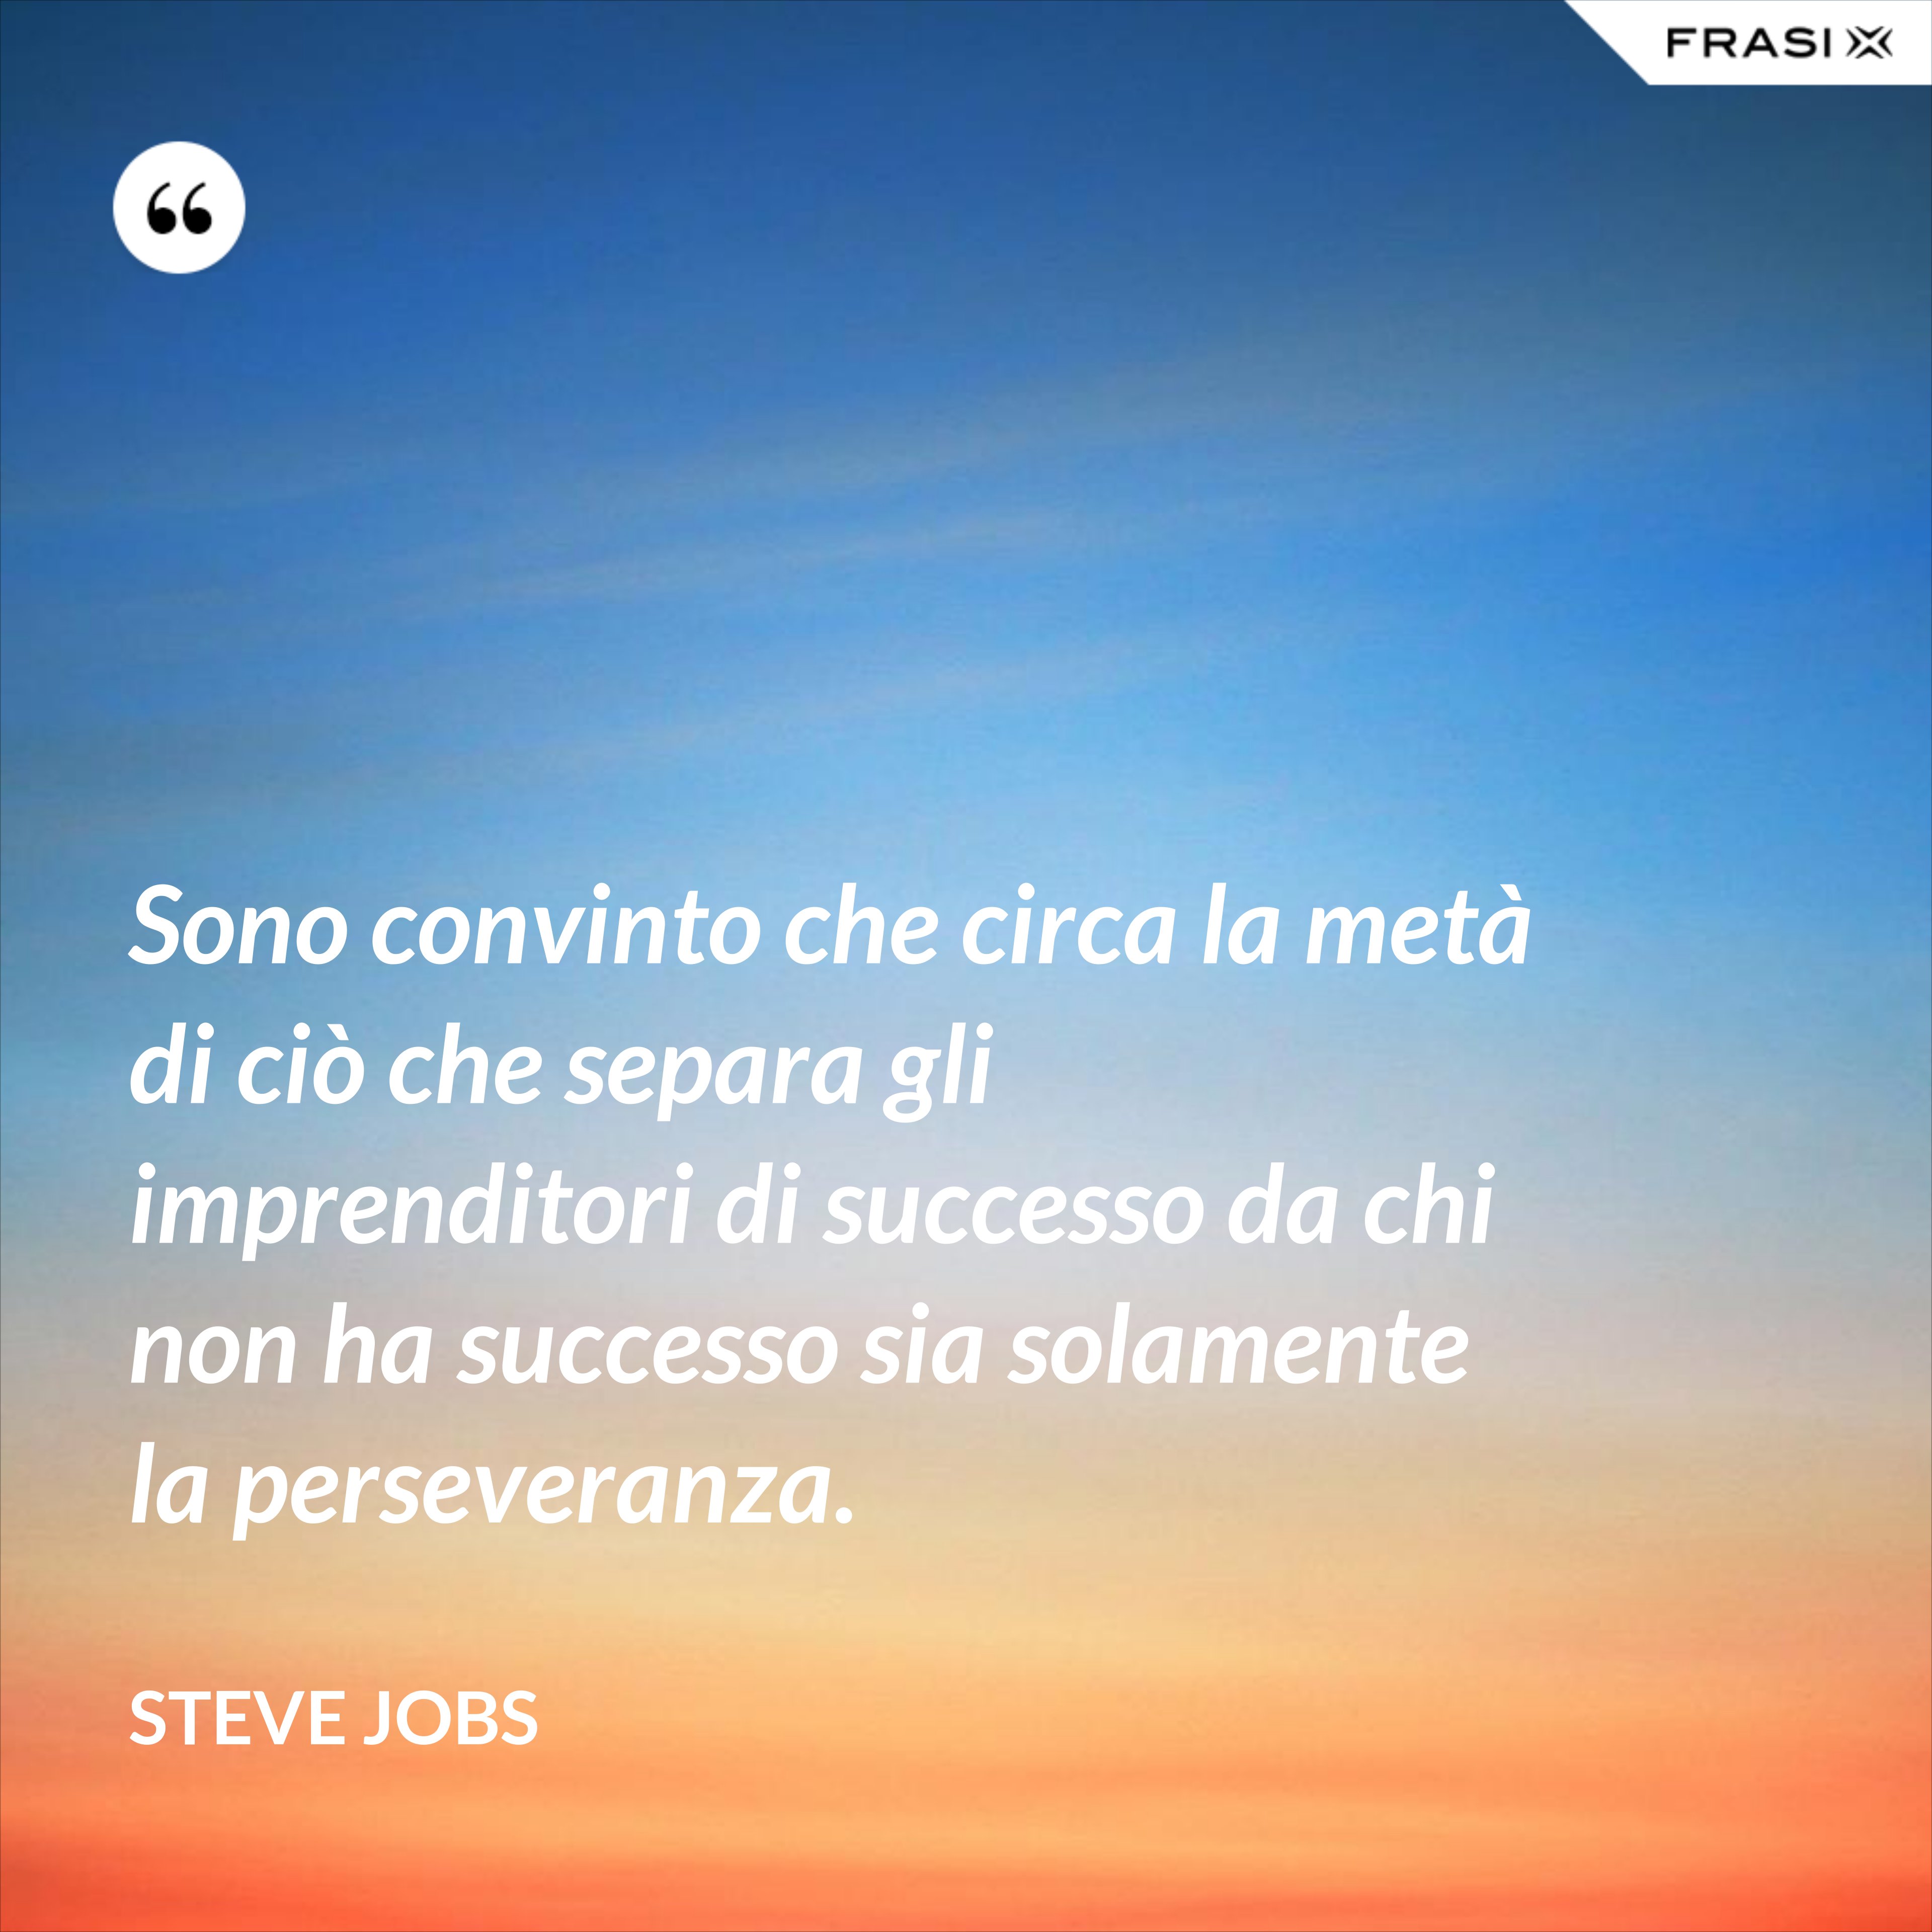 Sono convinto che circa la metà di ciò che separa gli imprenditori di successo da chi non ha successo sia solamente la perseveranza. - Steve Jobs